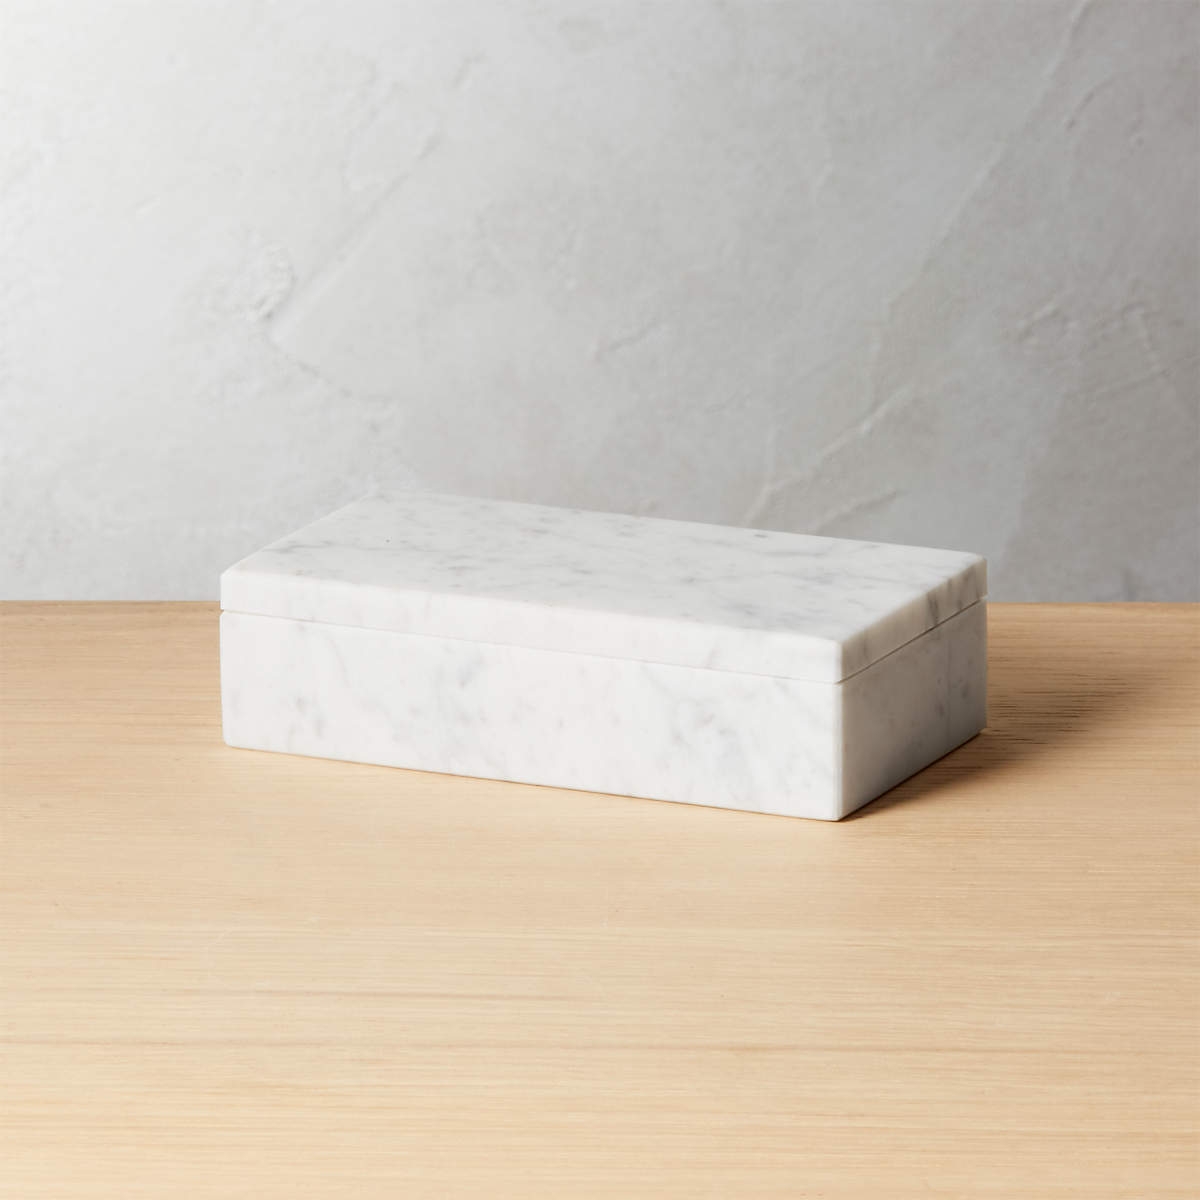 Large White Marble Box - Image 0